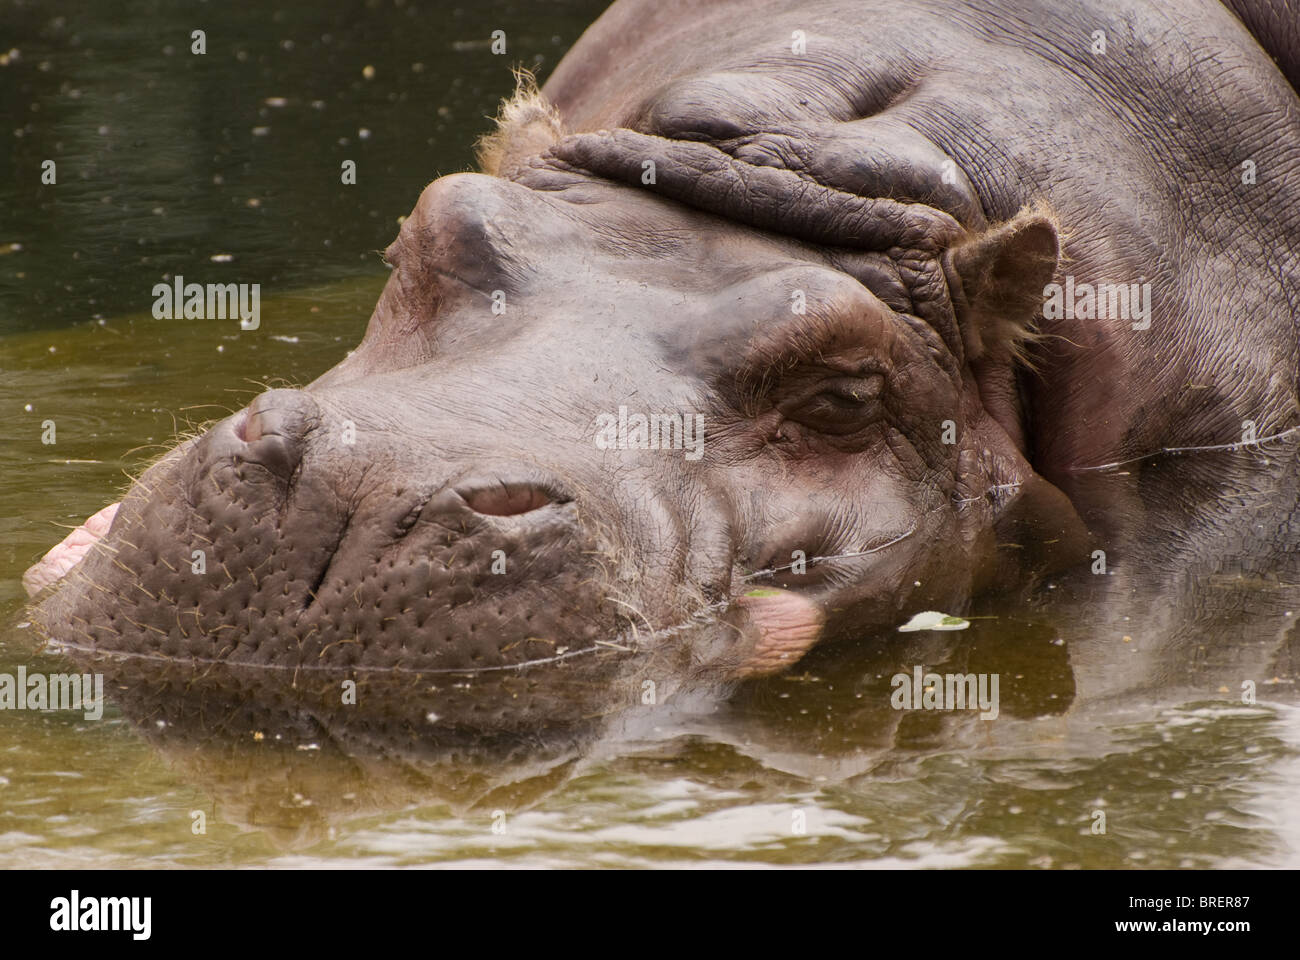 Riesige gelangweilt Nilpferd oder Hippo Tier Stockfoto